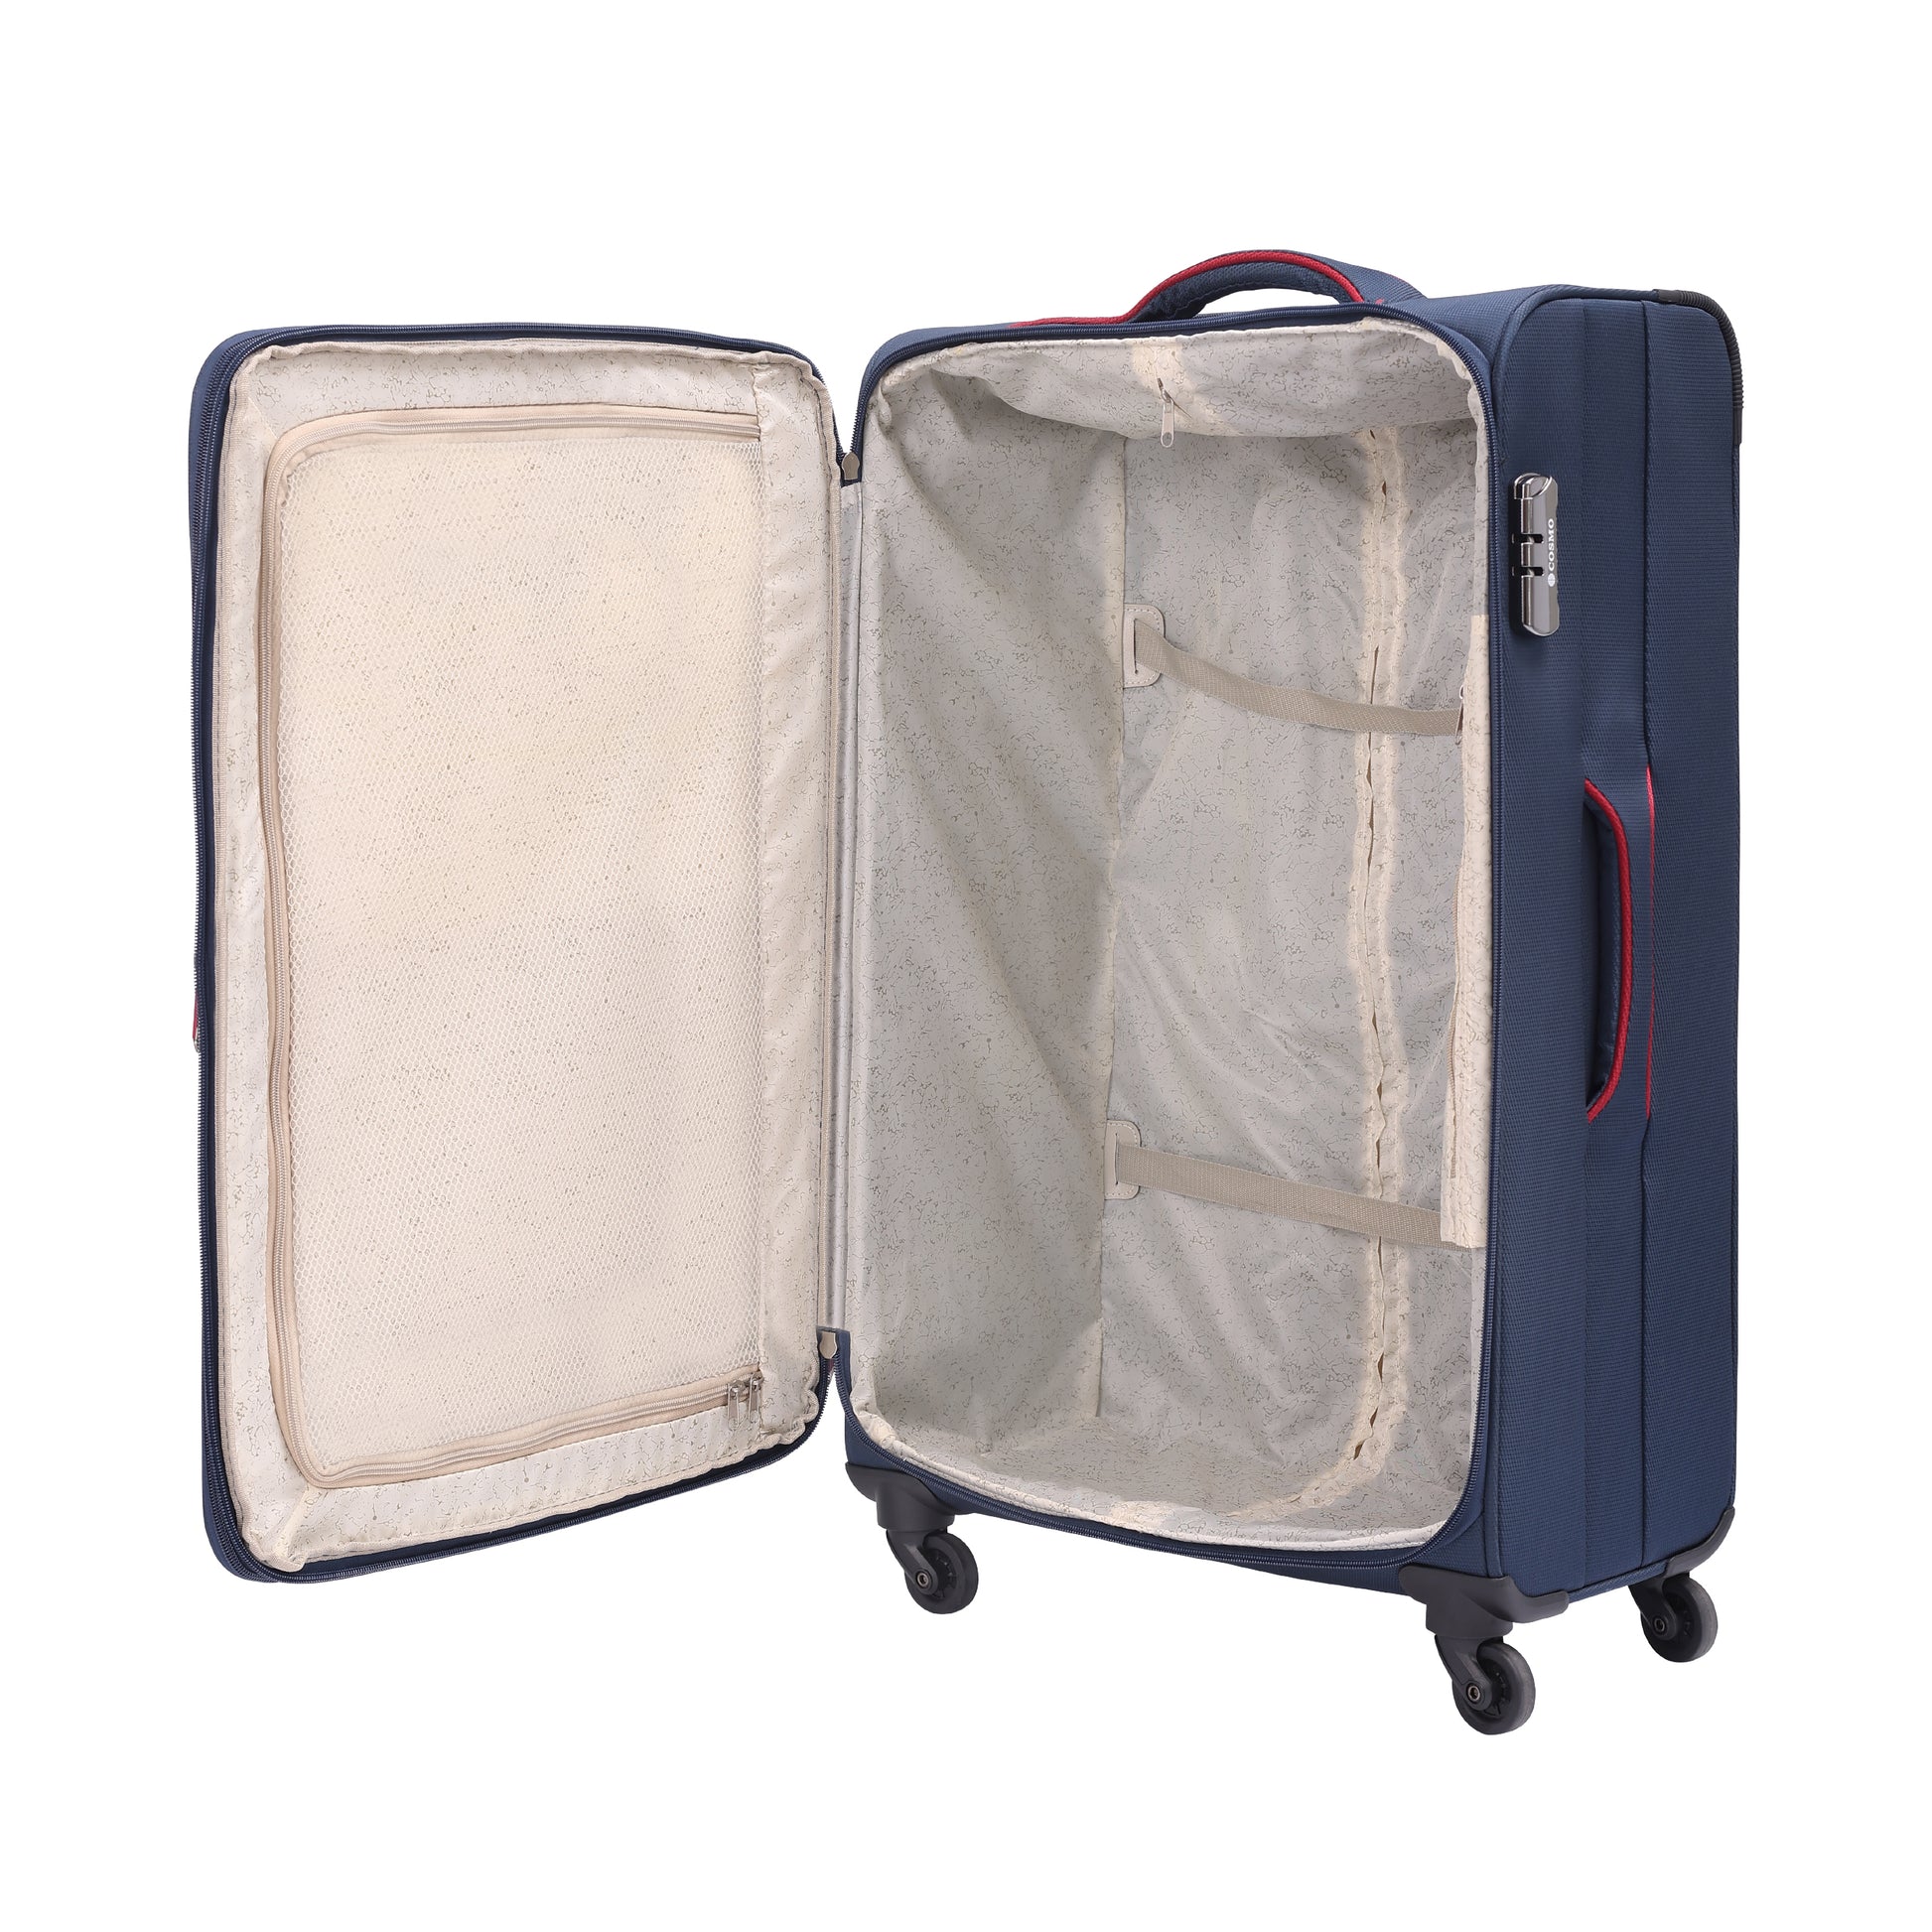 Beïnvloeden eigenaar Vervuild Cosmo Featherlite 4W 80 cm Soft Luggage Trolley Case – Cosmo Luggage